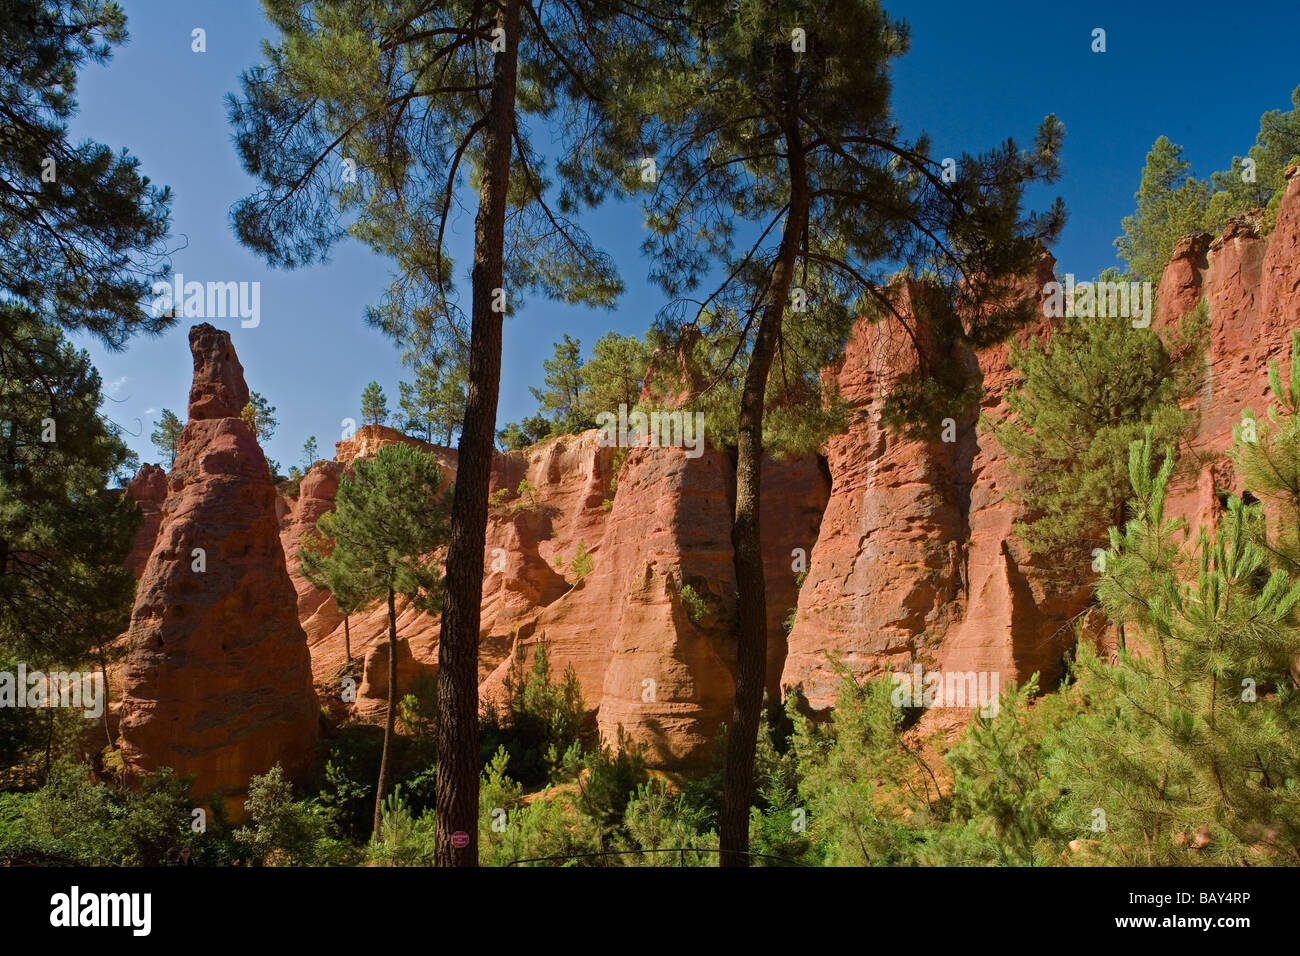 Ocker Steinbruch im Sonnenlicht, Roussillon, Vaucluse, Provence, Frankreich Stockfoto